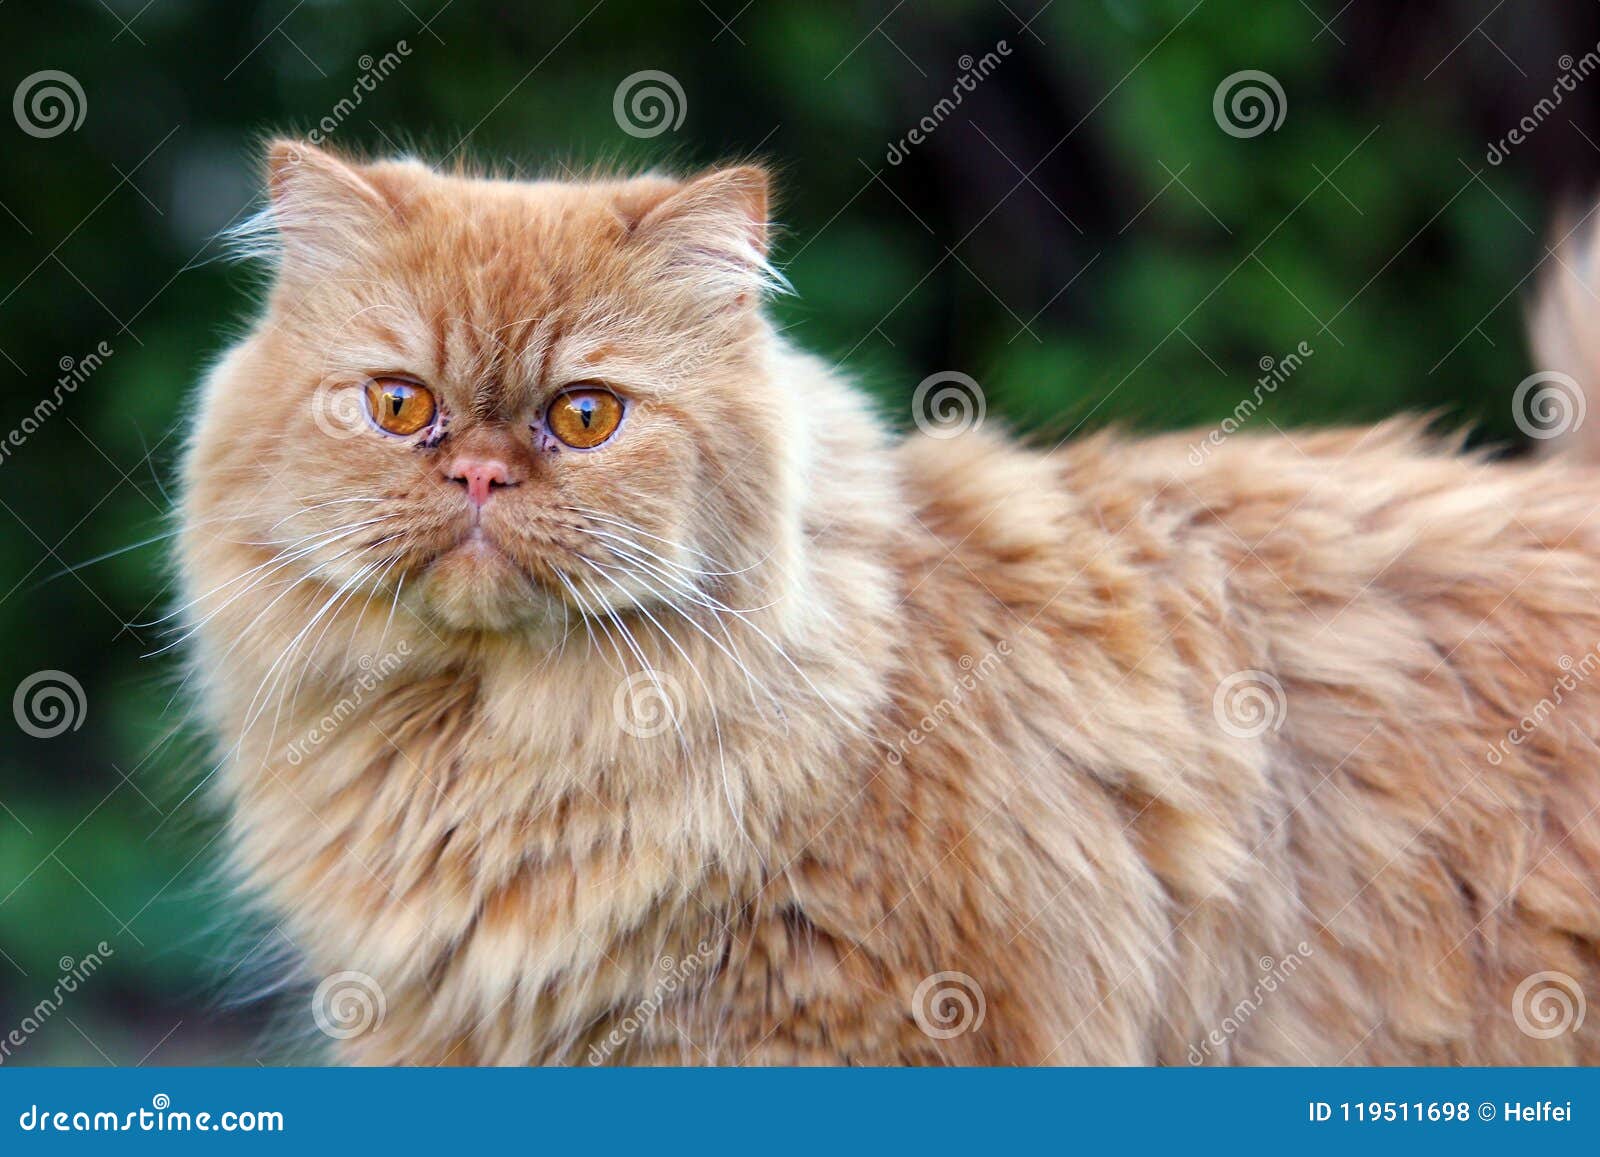 oldest persian cat